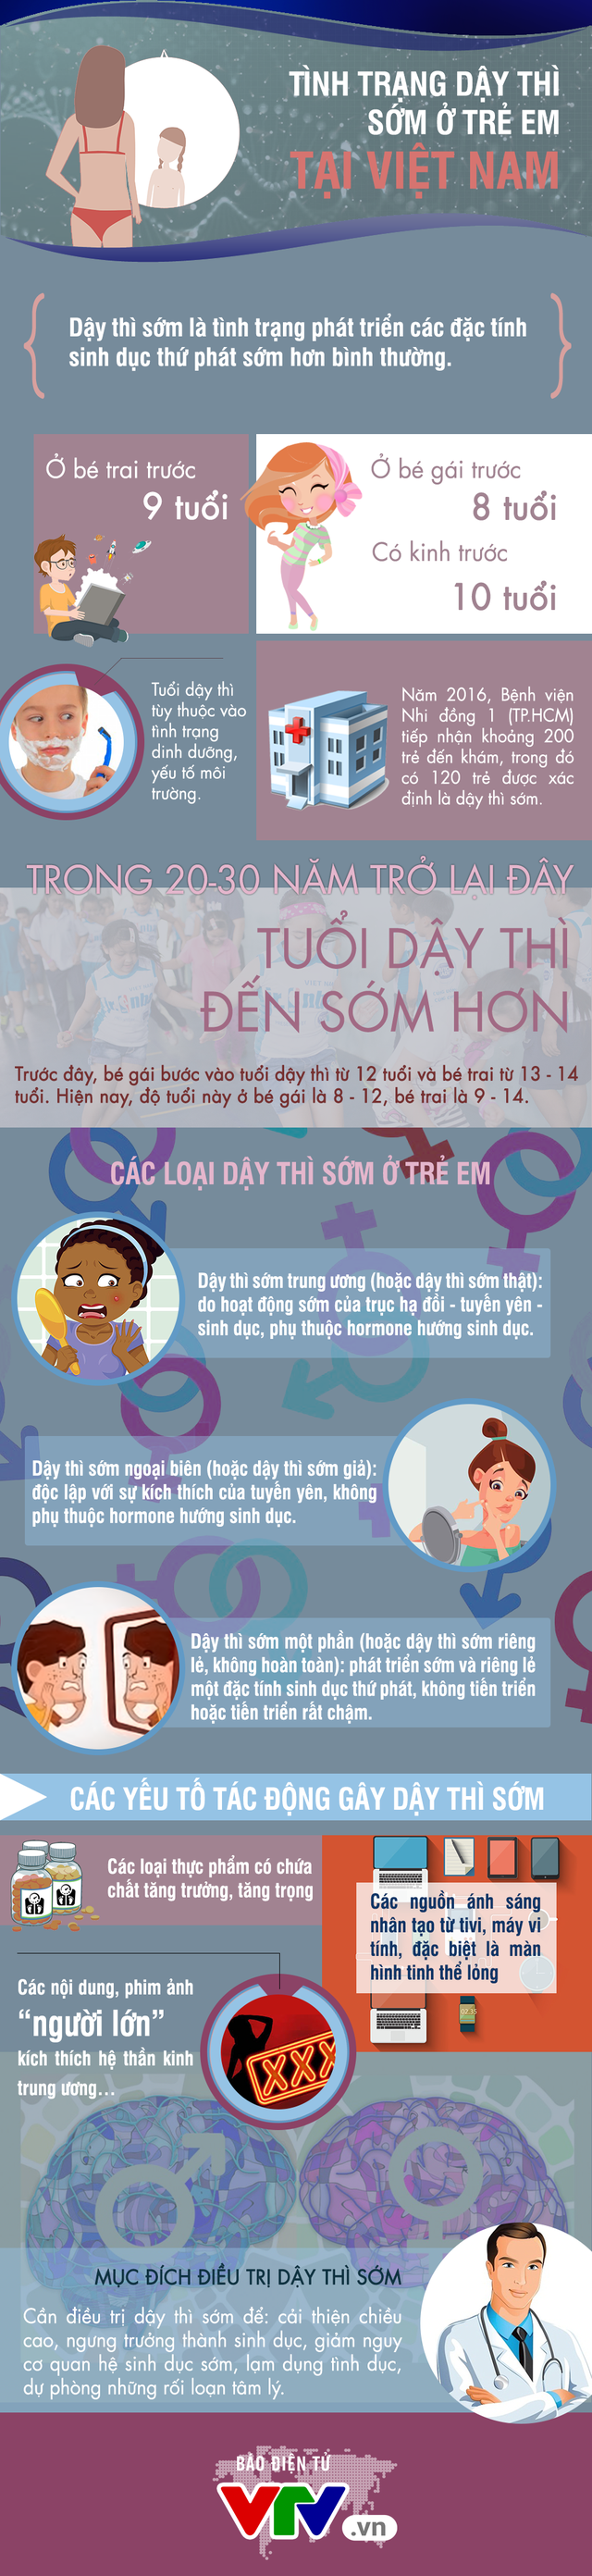 [INFOGRAPHIC] Tình trạng dậy thì sớm ở trẻ em tại Việt Nam - Ảnh 1.